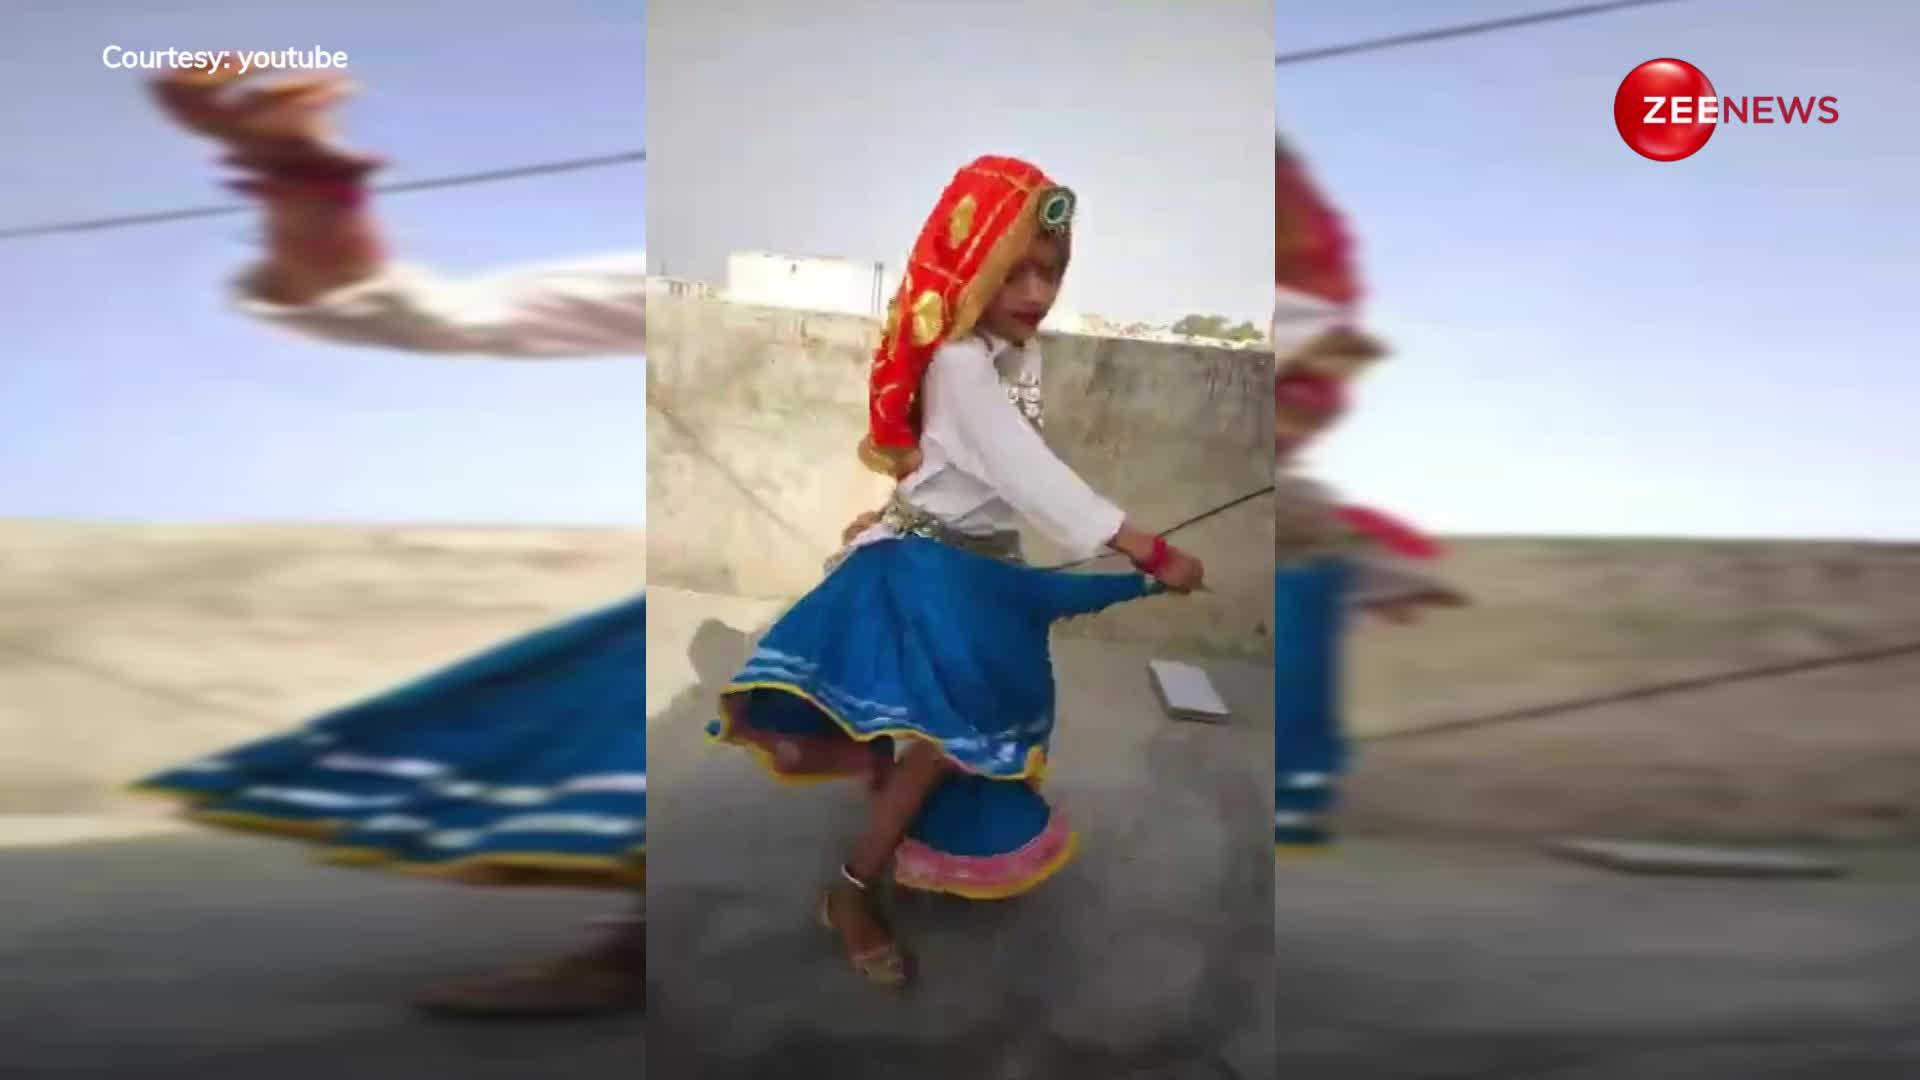 घुटने तक का घाघरा पहन 7 साल की लड़की ने छत पर किया झन्नाटेदार डांस, वीडियो देख बावली हुई पब्लिक